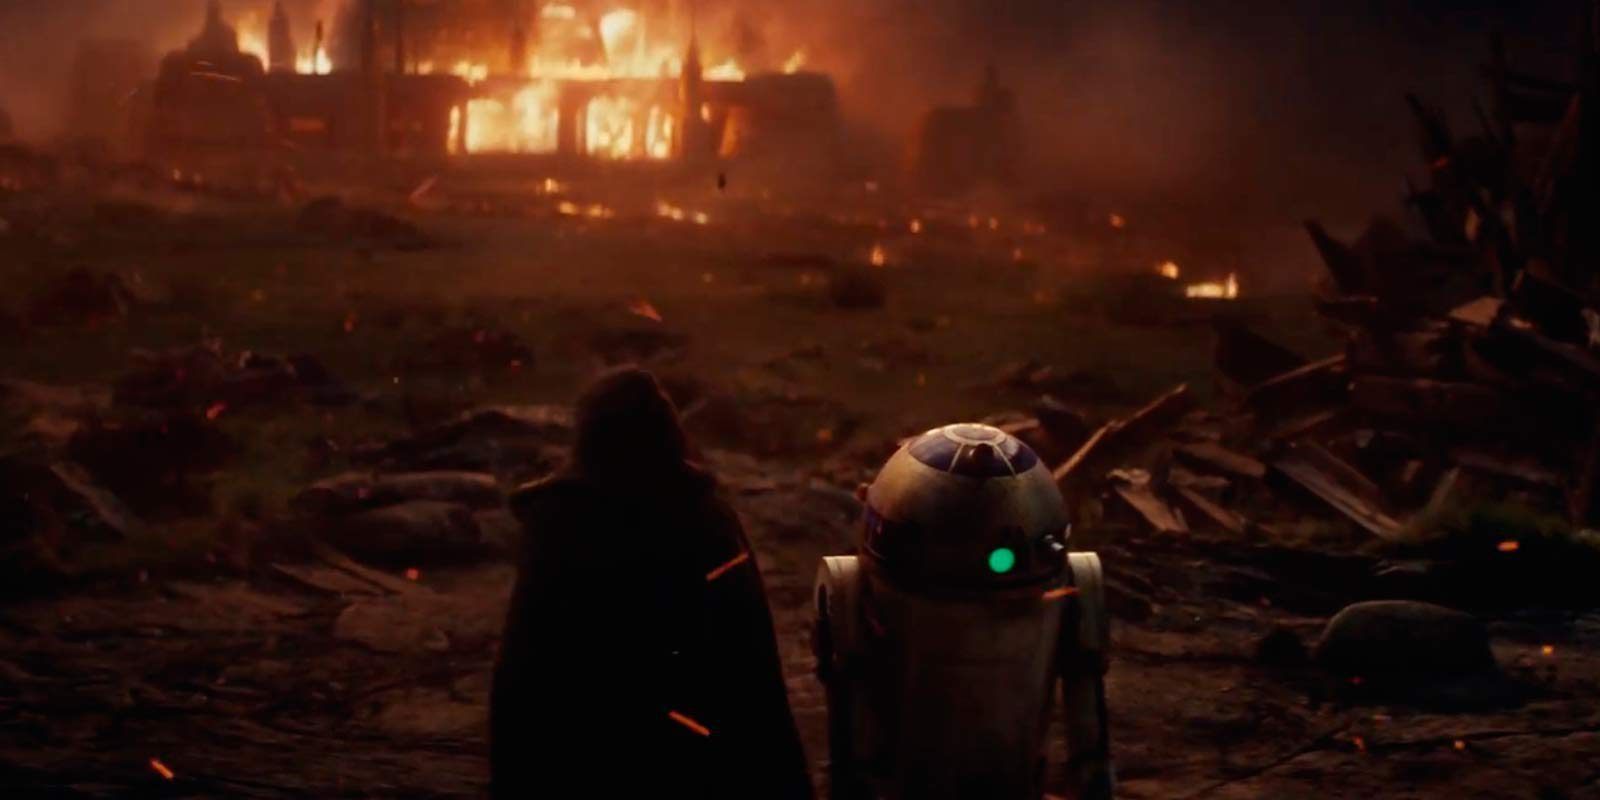 Mañana habrá nuevo tráiler de 'Star Wars: Los últimos Jedi'